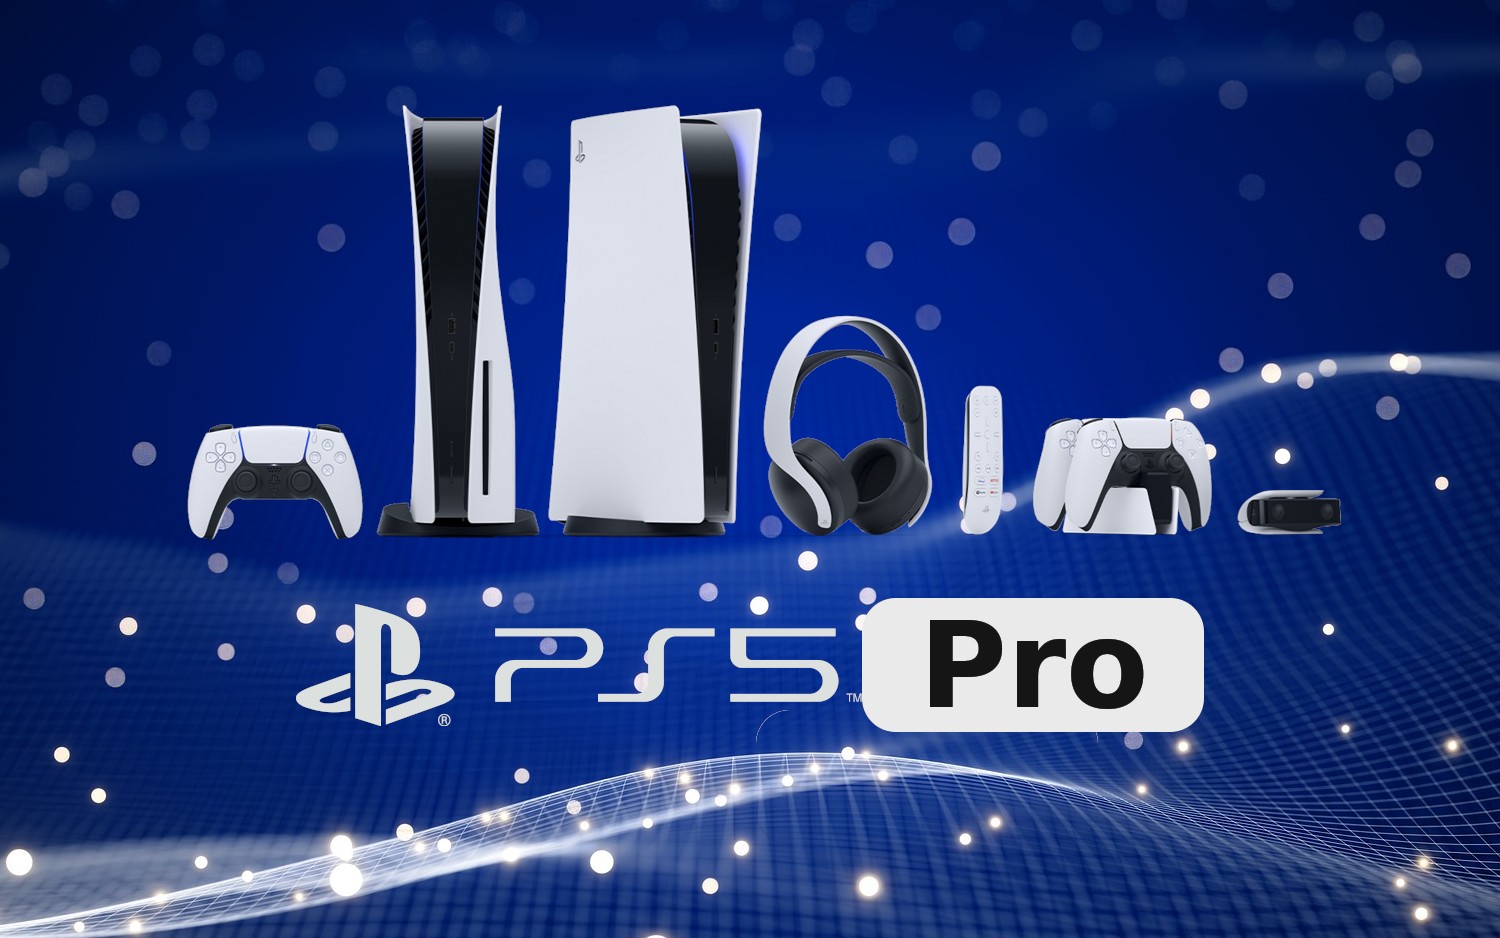 Espera-se que as especificações completas do PS5 Pro vazem ainda